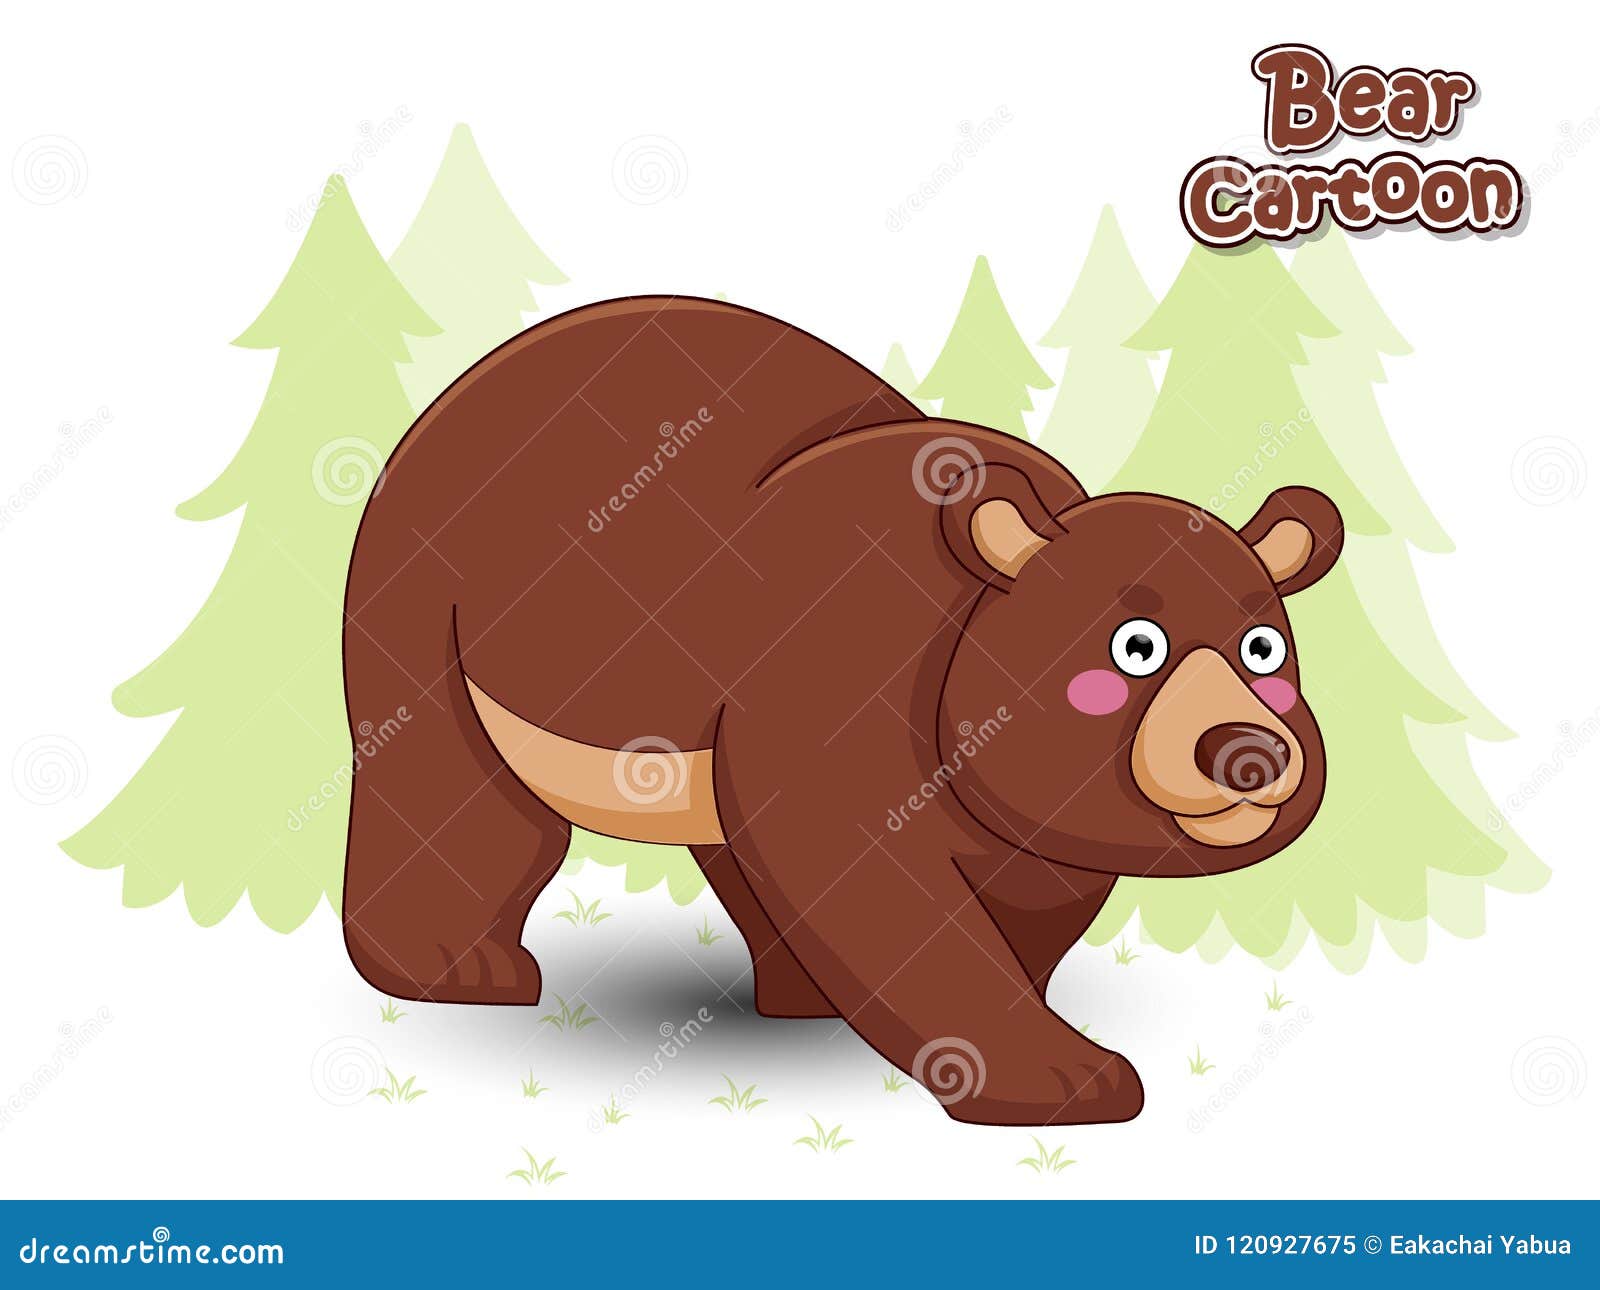 1. "Blondie Bear" cartoon character - wide 9